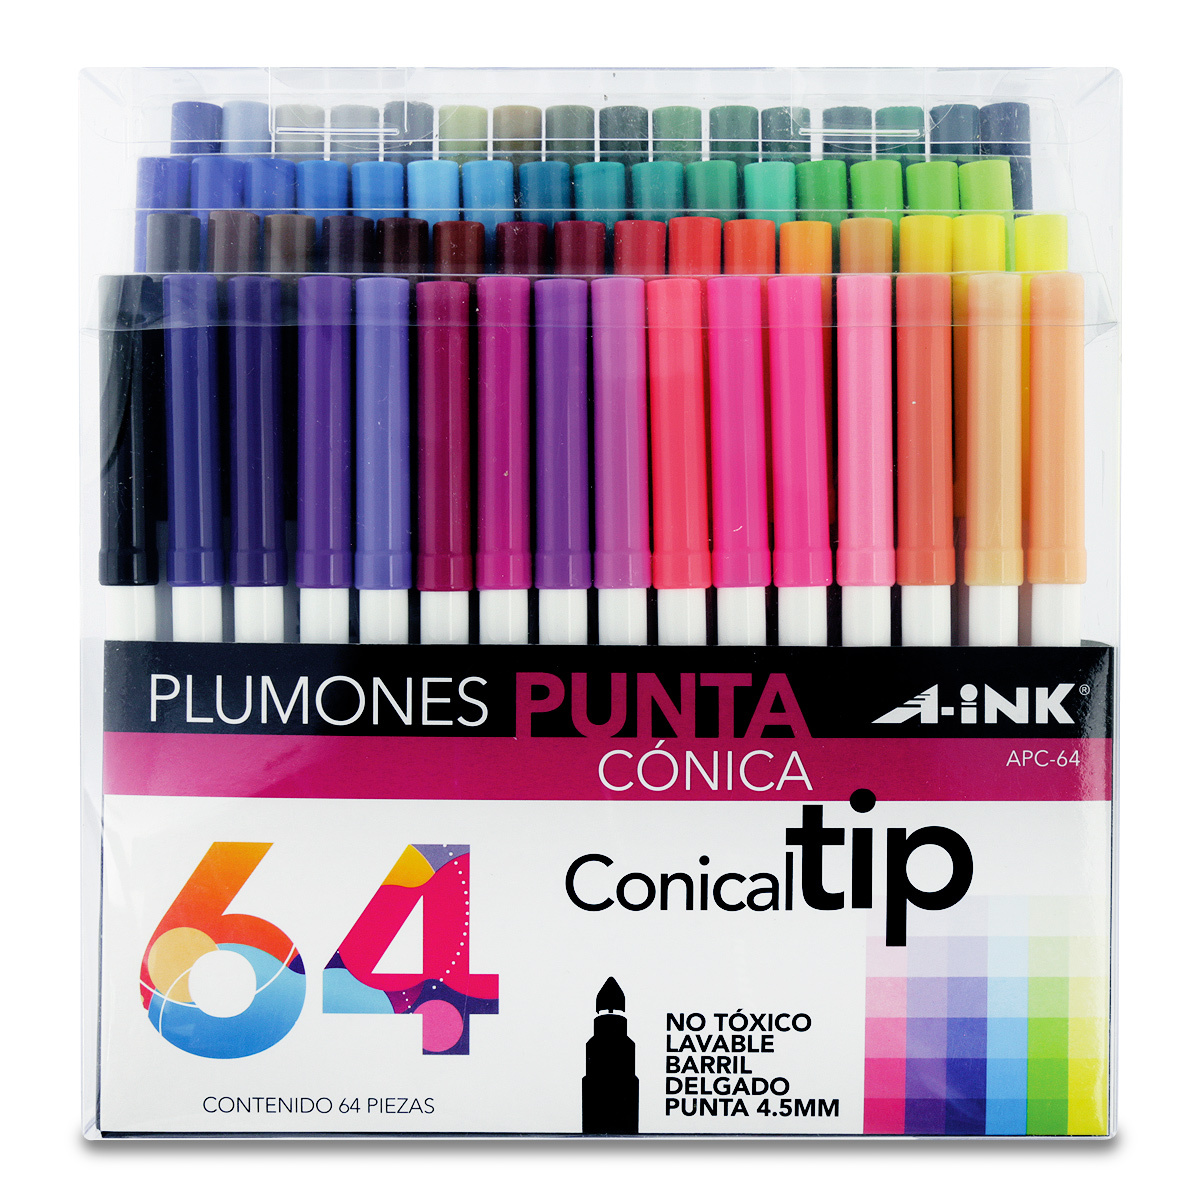 Plumones A-ink Conical Tip APC-64 Lavables Colores 64 piezas